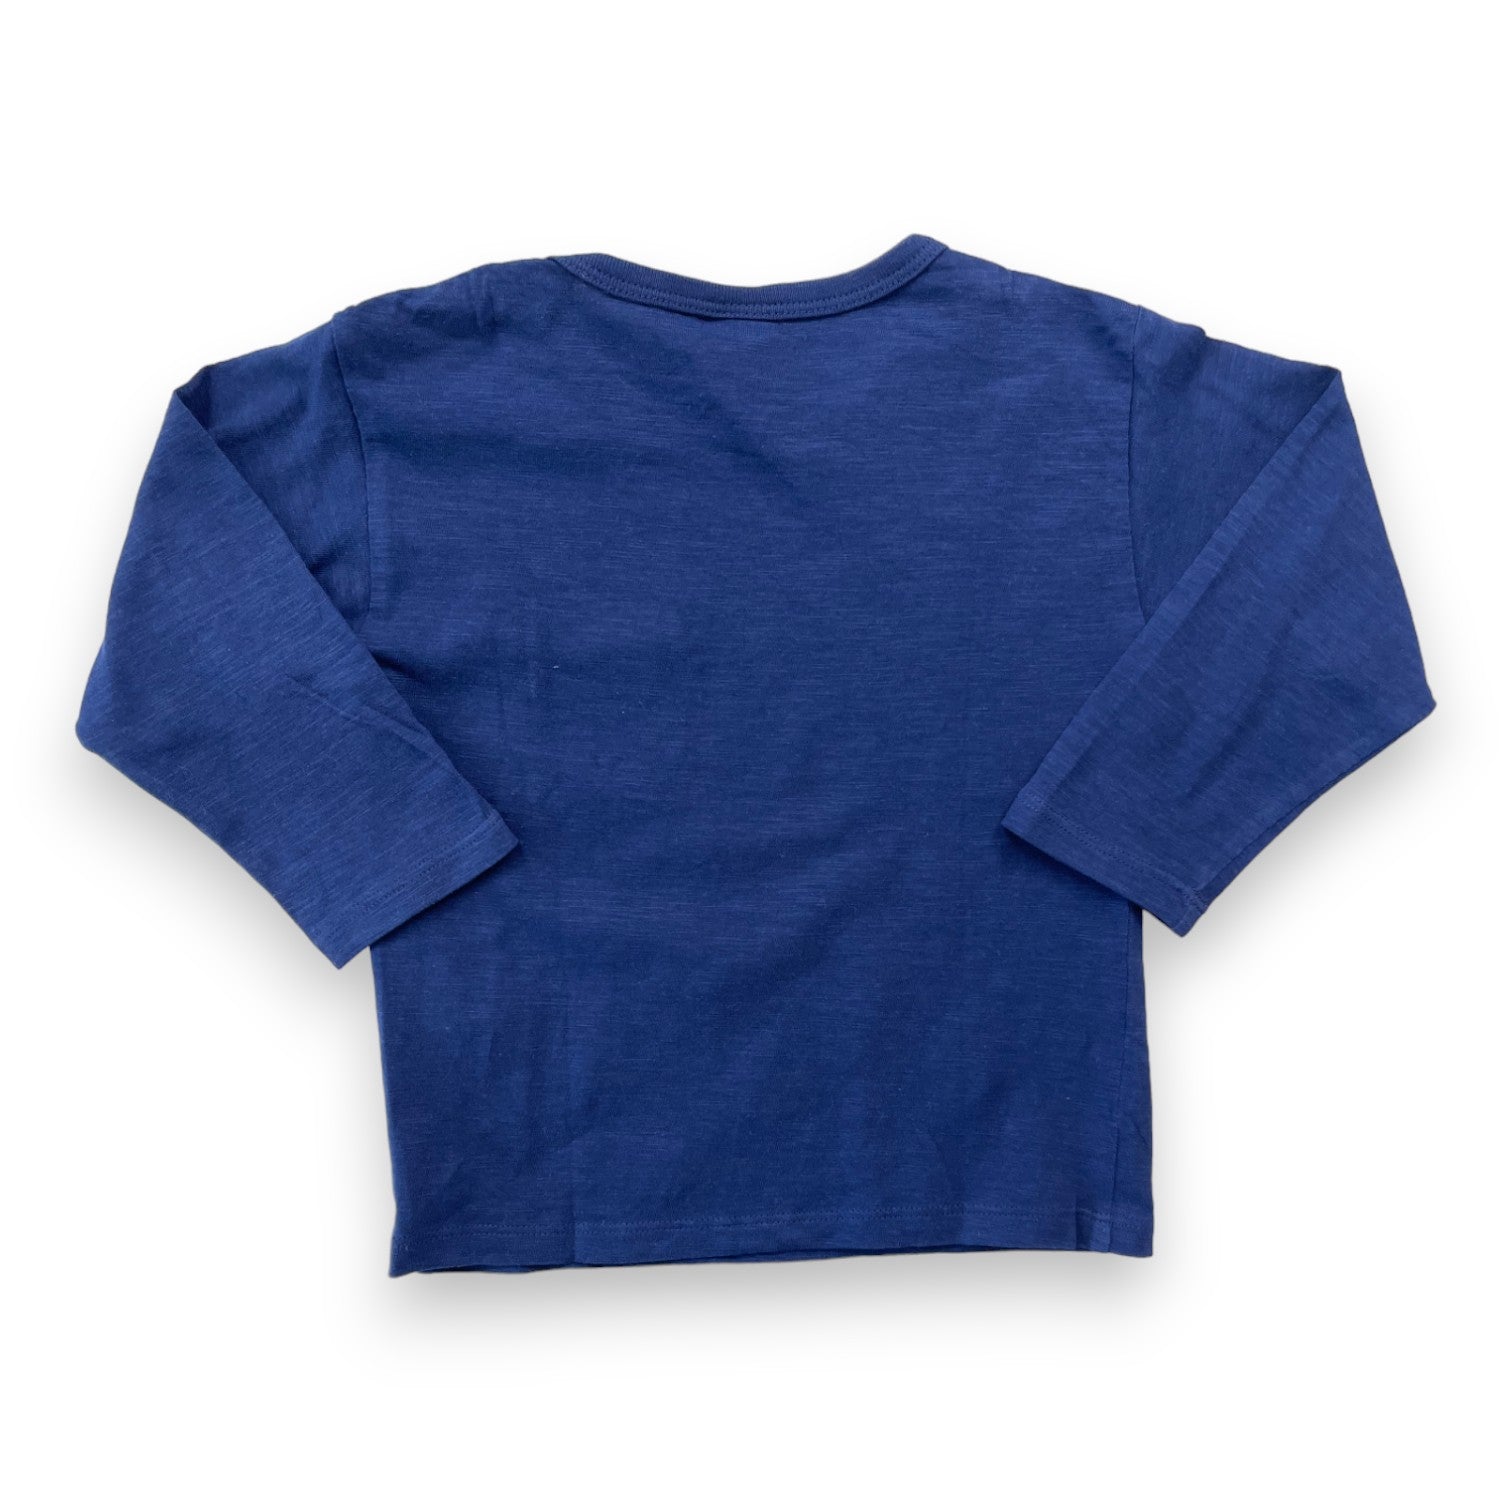 PETIT BATEAU - T shirt manches longues bleu marine- 2 ans